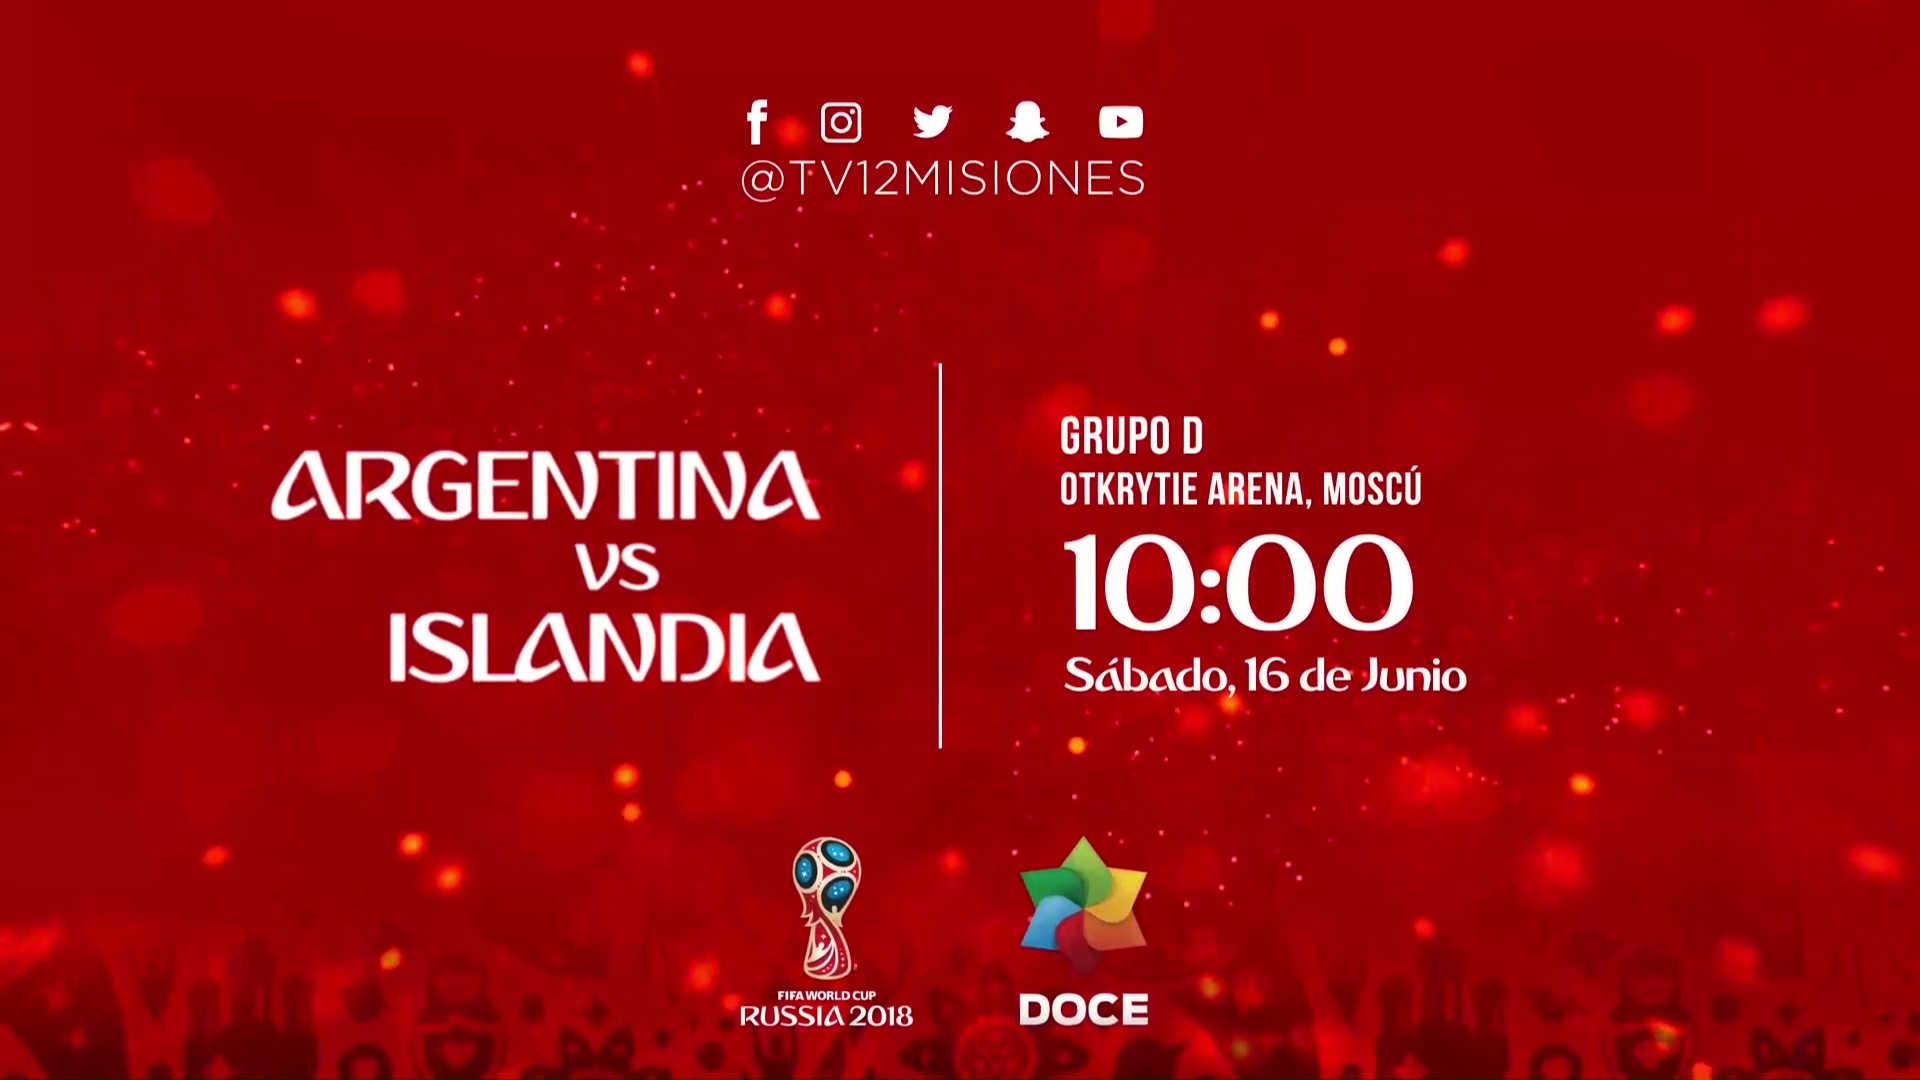 Rusia 2018. Argentina – Islandia a las 10:00 en vivo por Canal 12